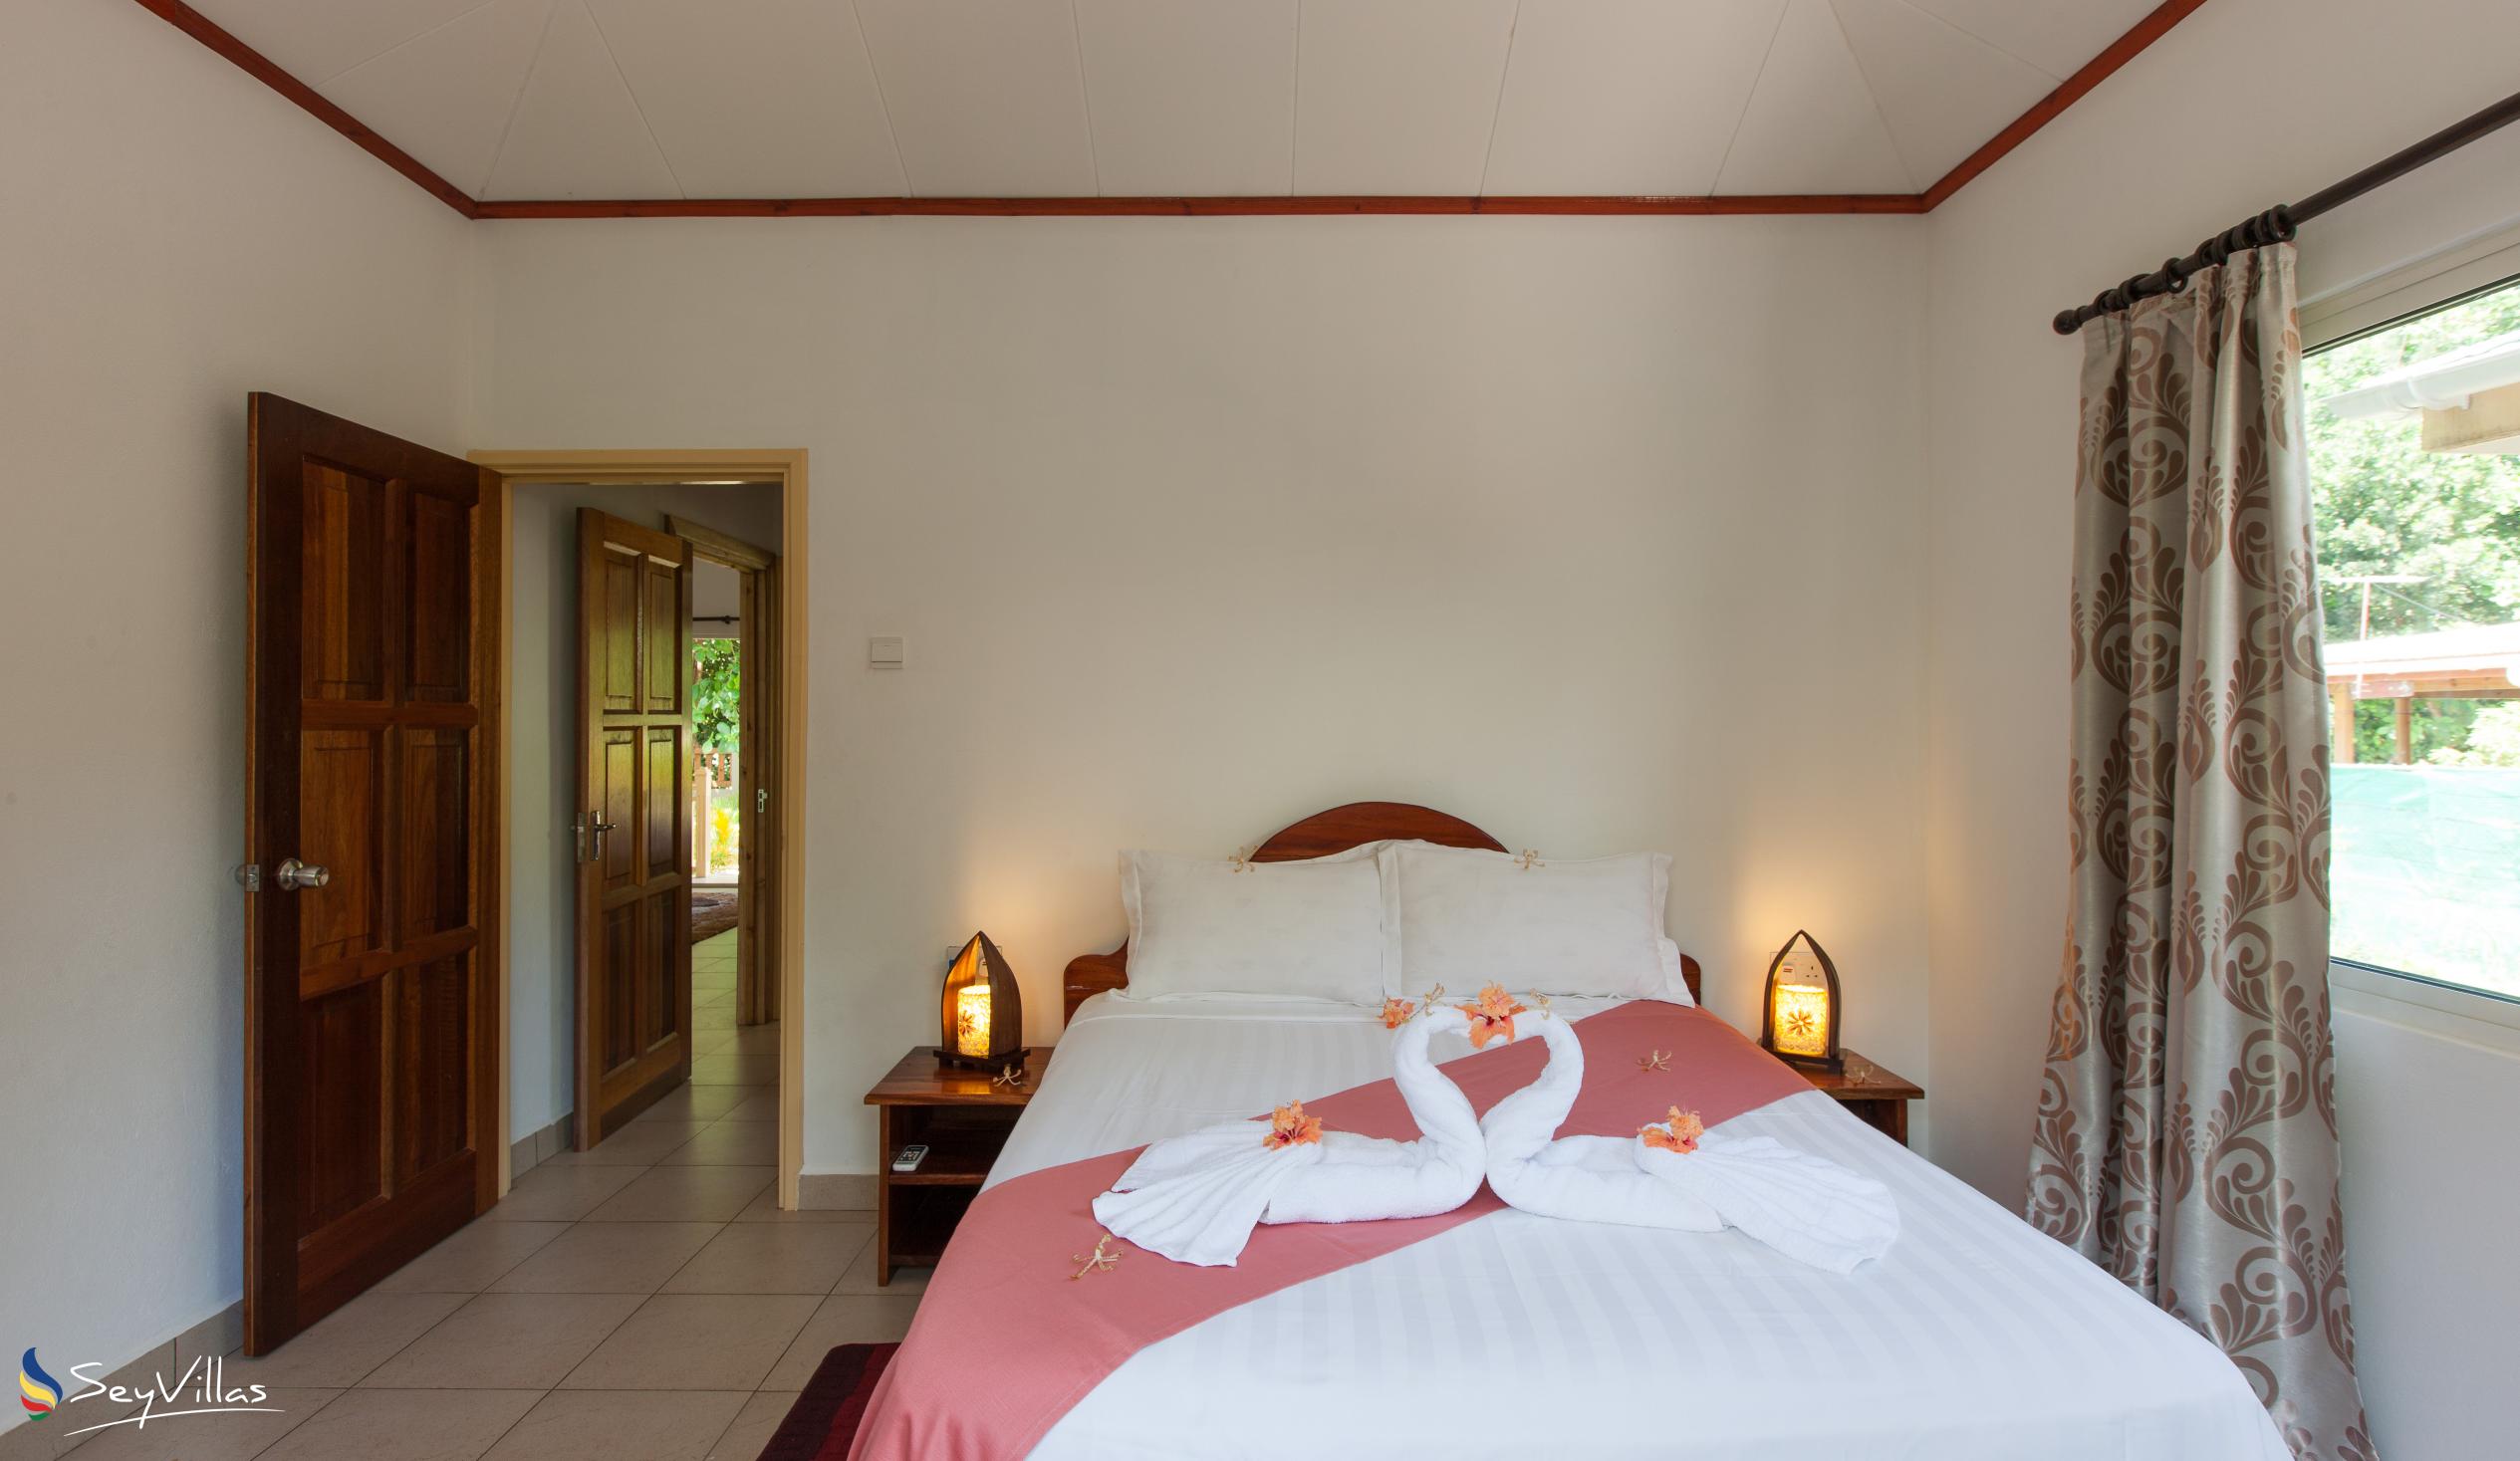 Foto 25: Hostellerie La Digue - Bungalow con 3 camere da letto - La Digue (Seychelles)